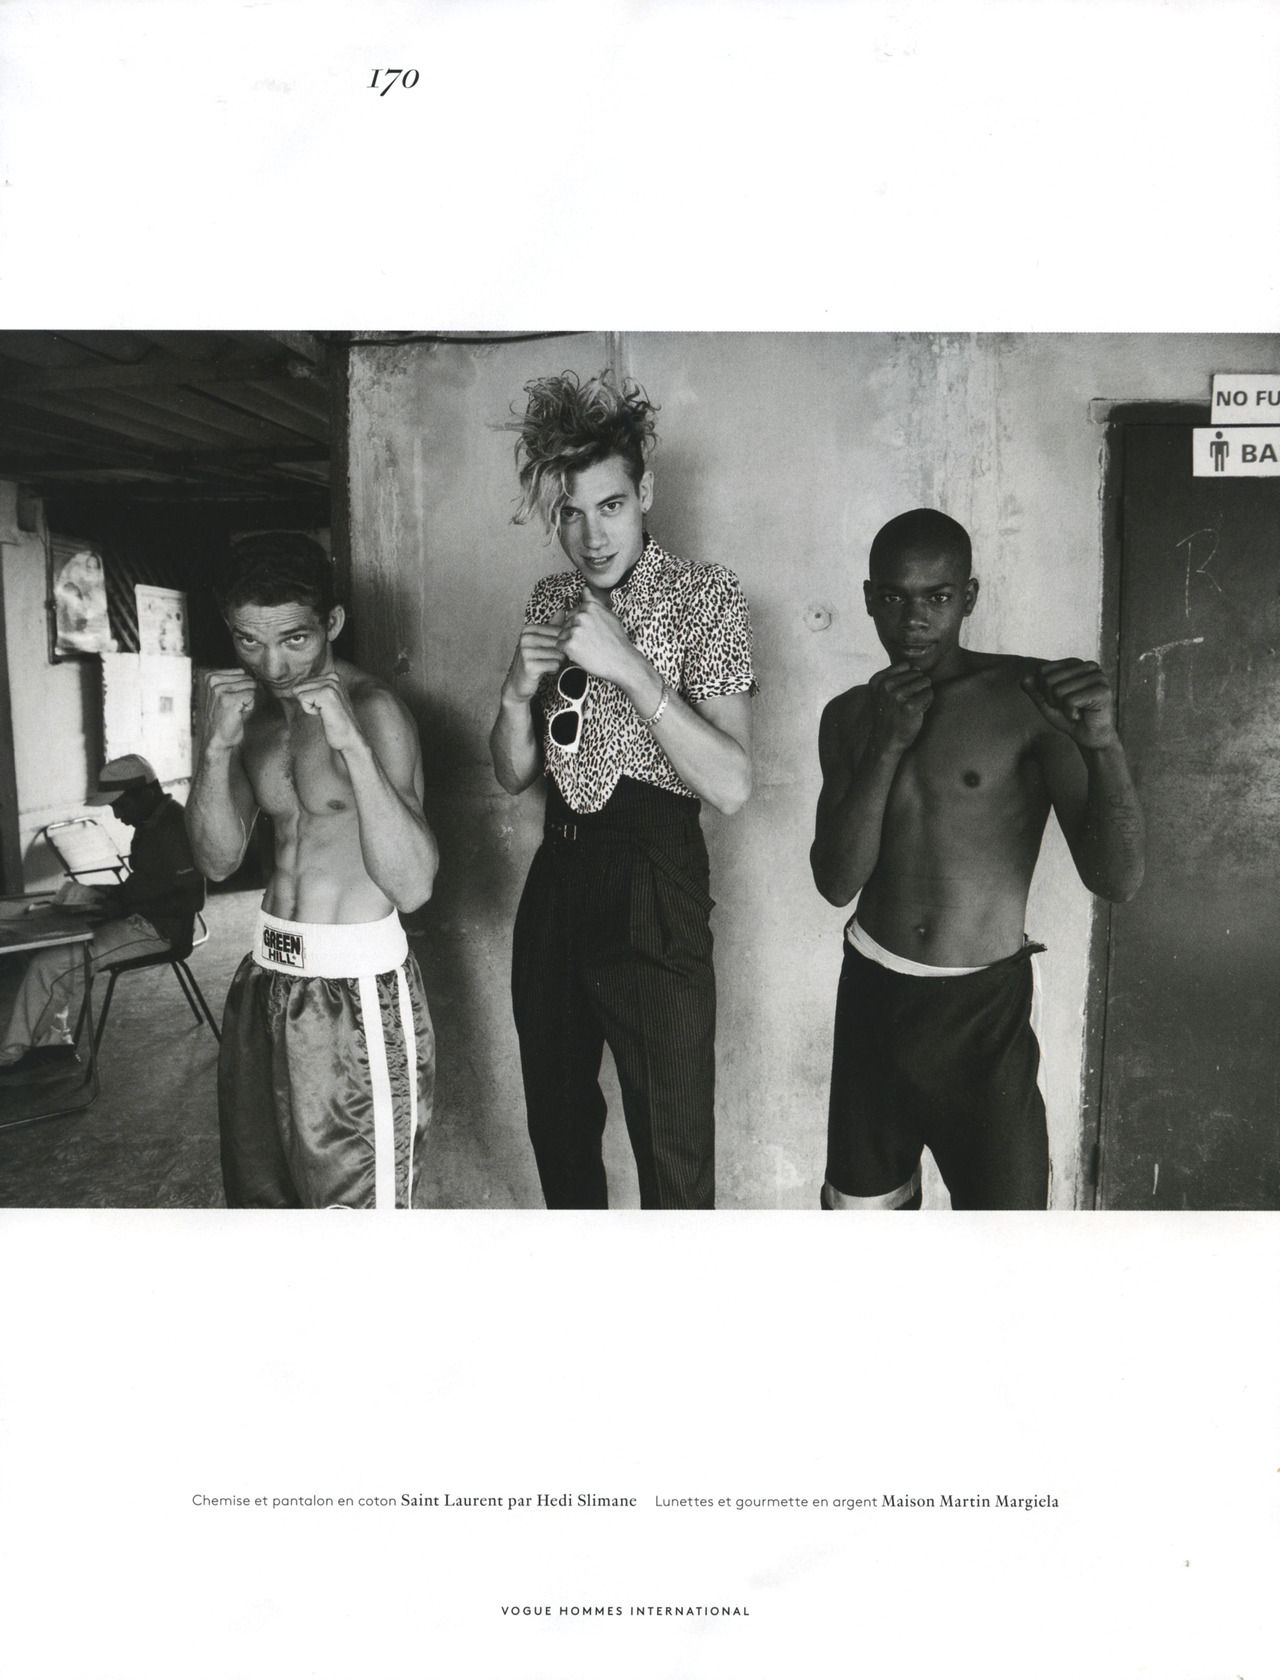 Lyle Lodwick Explores Cuba for Vogue Hommes International